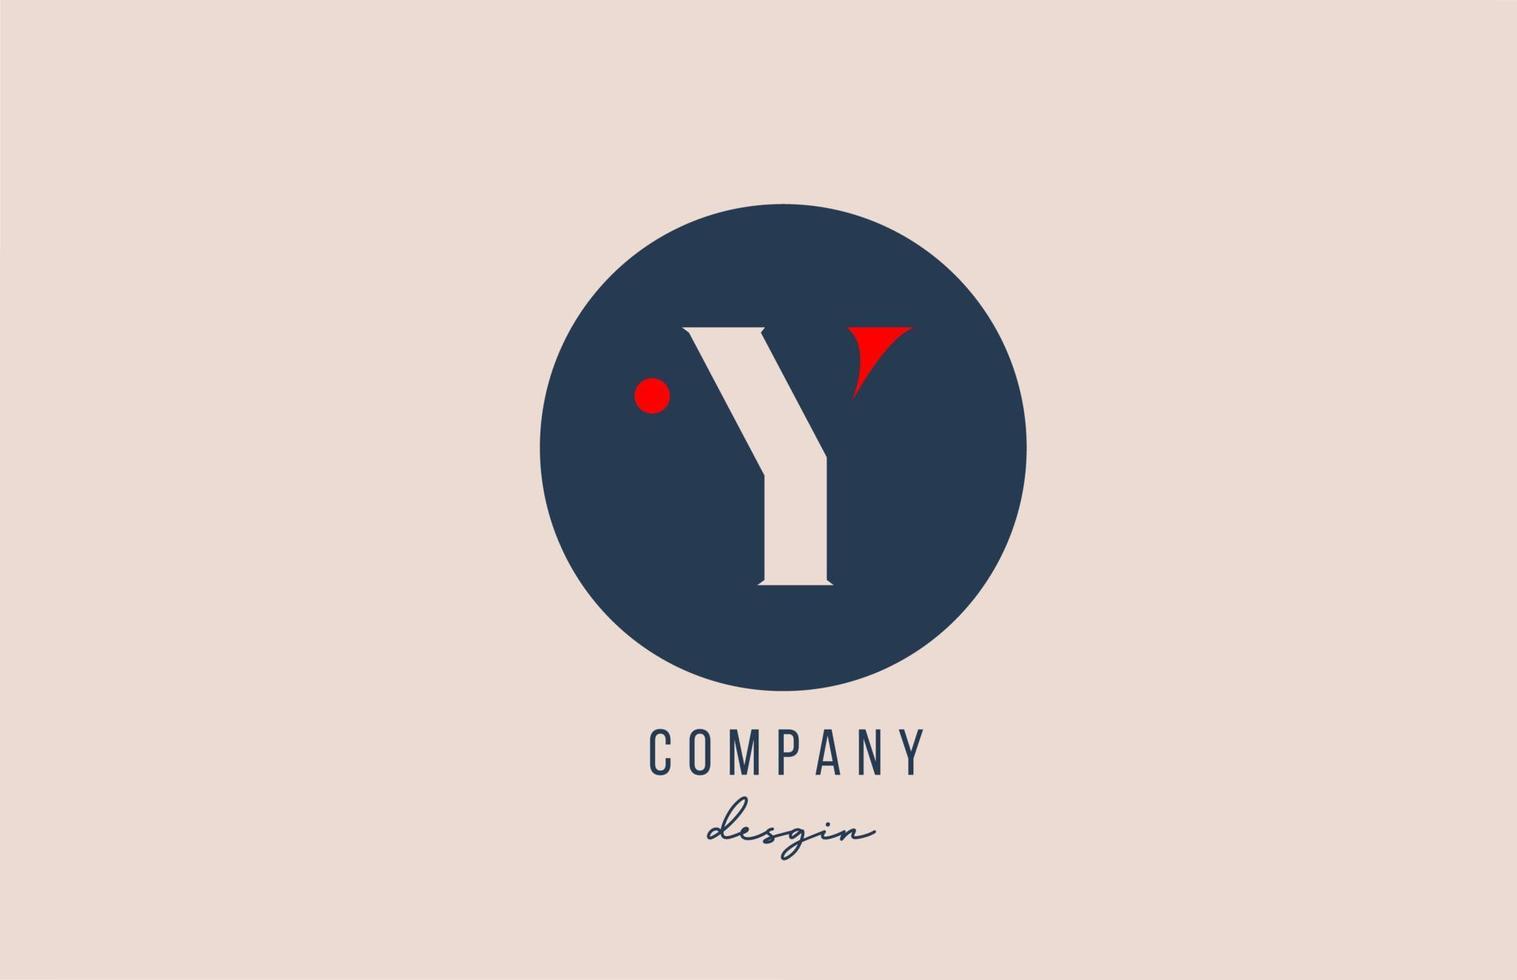 Projeto do ícone do logotipo do alfabeto da letra y ponto vermelho com um círculo azul para empresa e negócios vetor